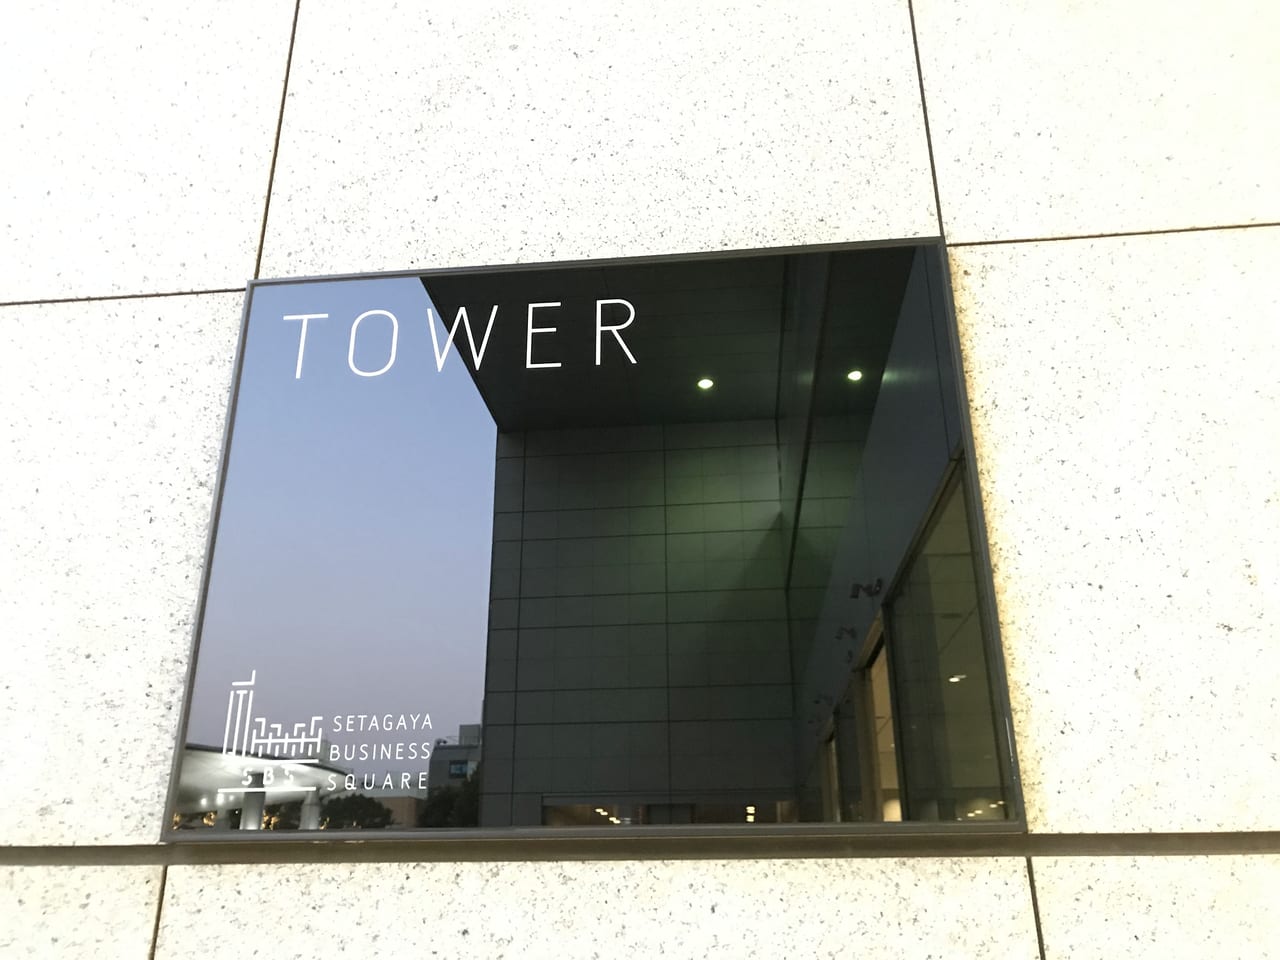 世田谷区用賀駅直結の世田谷ビジネススクエアがGMOタワーになり、駅の副称も変更されます。